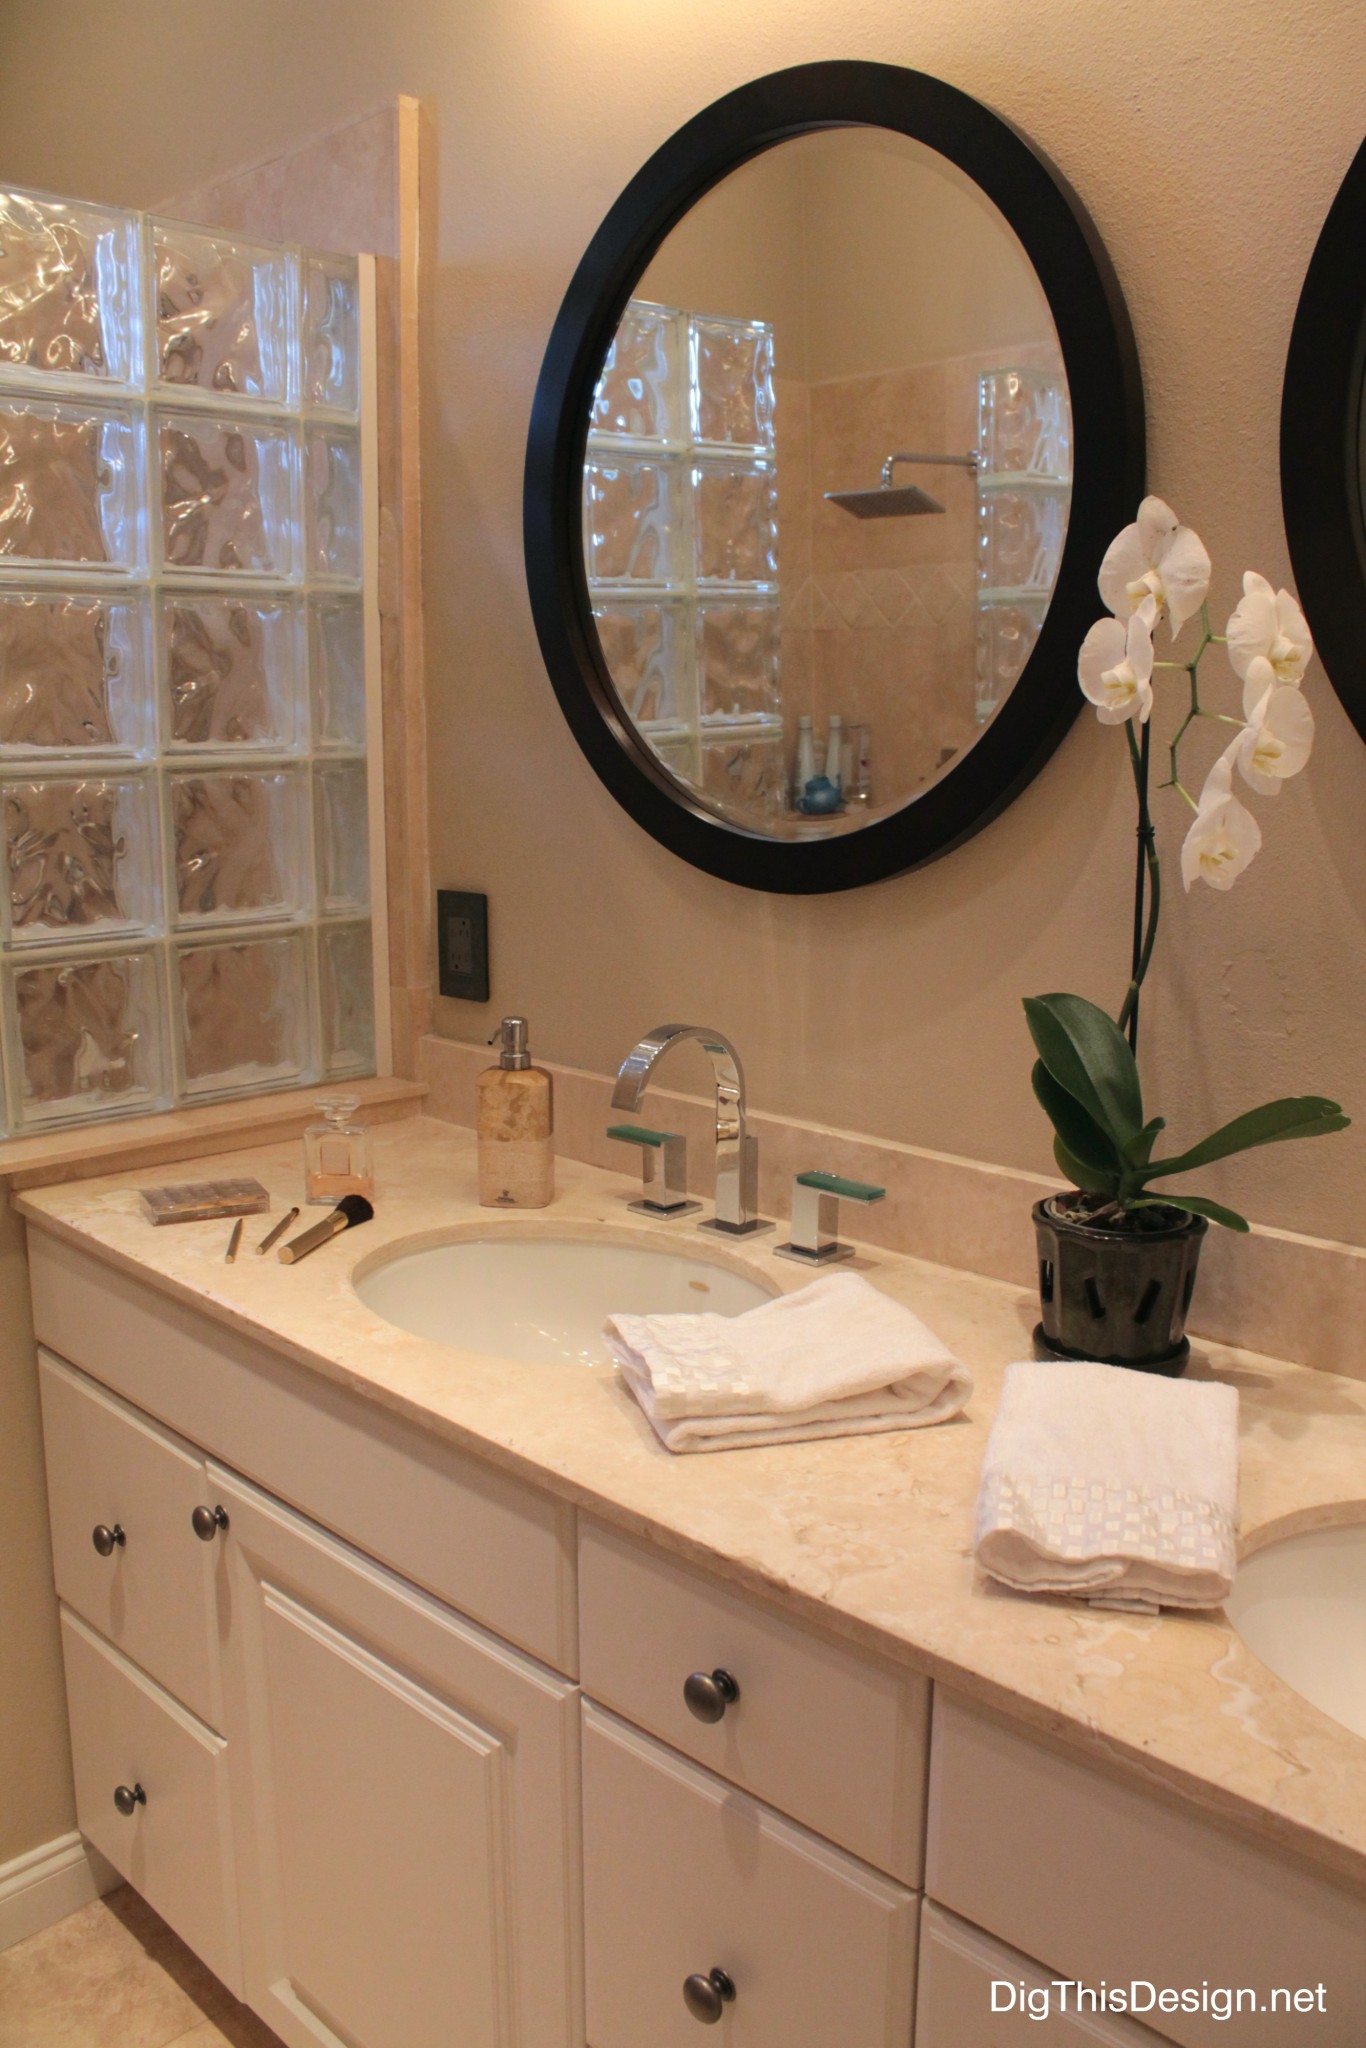 bathroom vanity accessories color light plumbing fixtures decorative hardware design diy inspiration